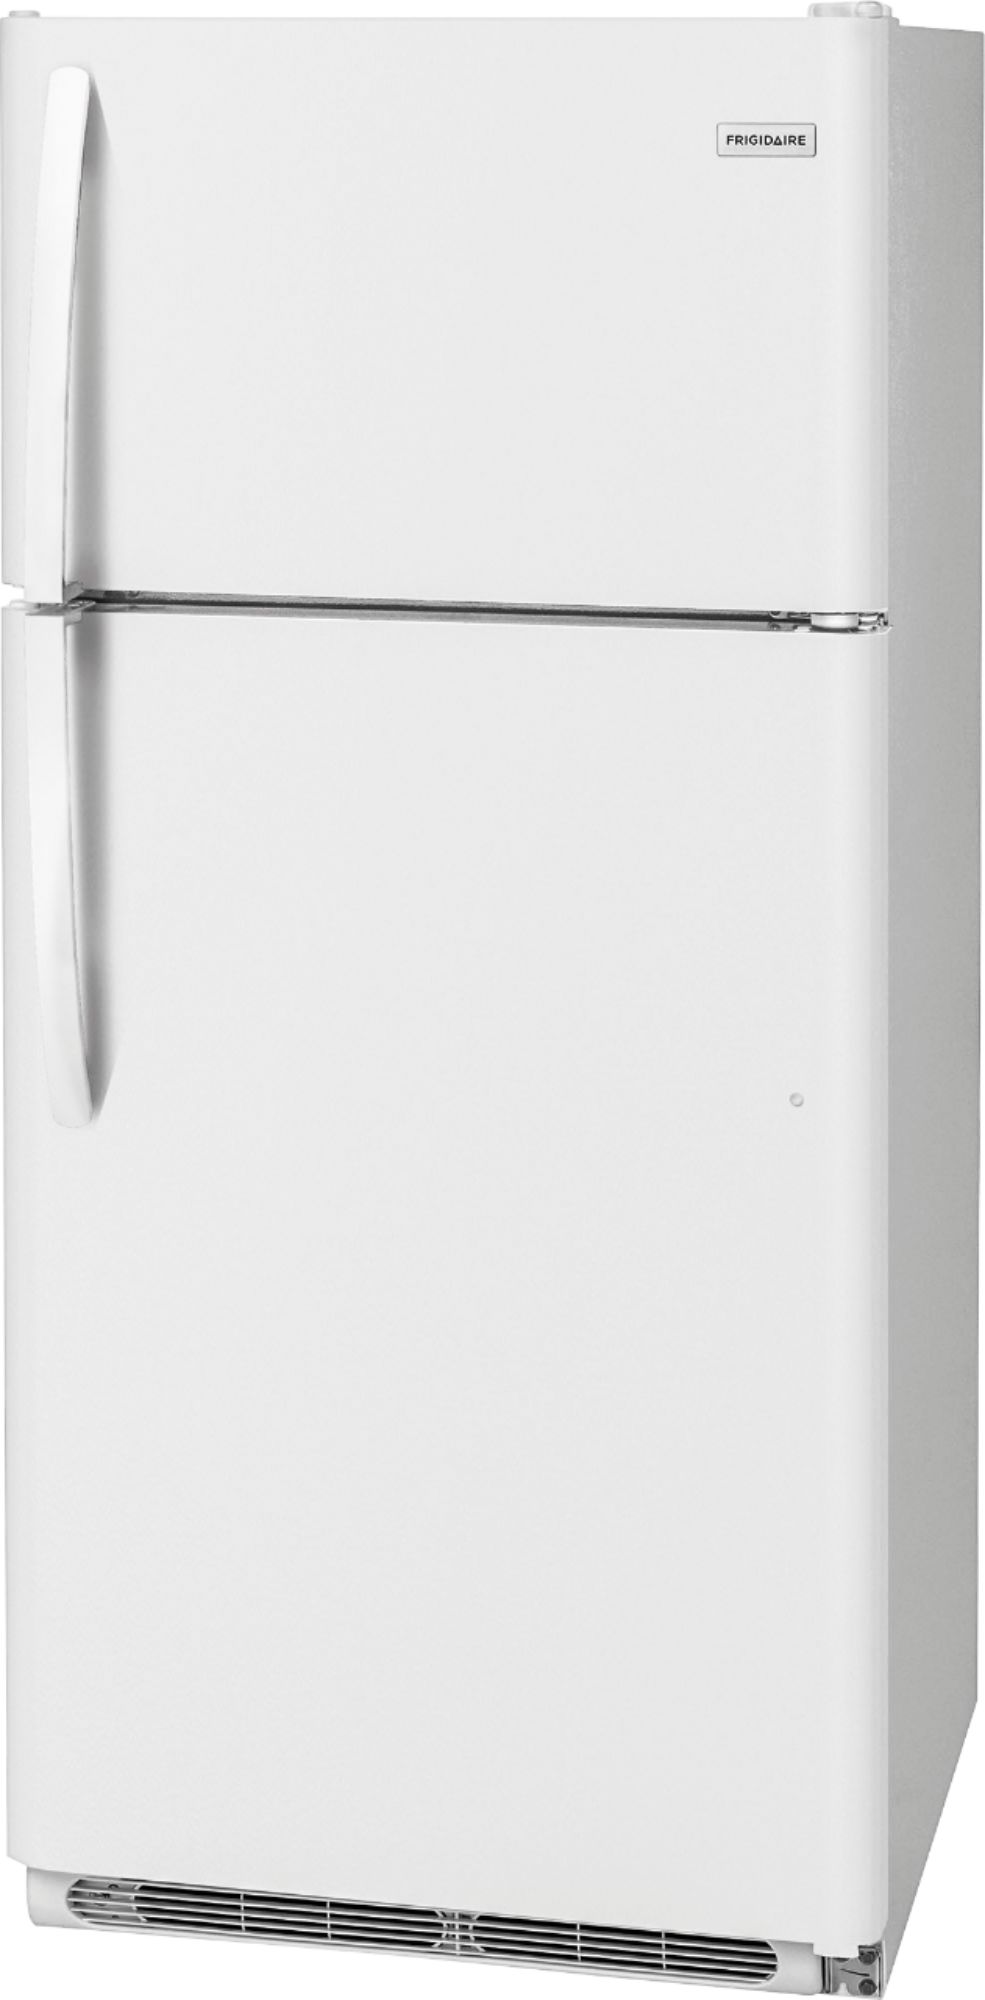 Left View: Frigidaire - 18.1 Cu. Ft. Top-Freezer Refrigerator - White